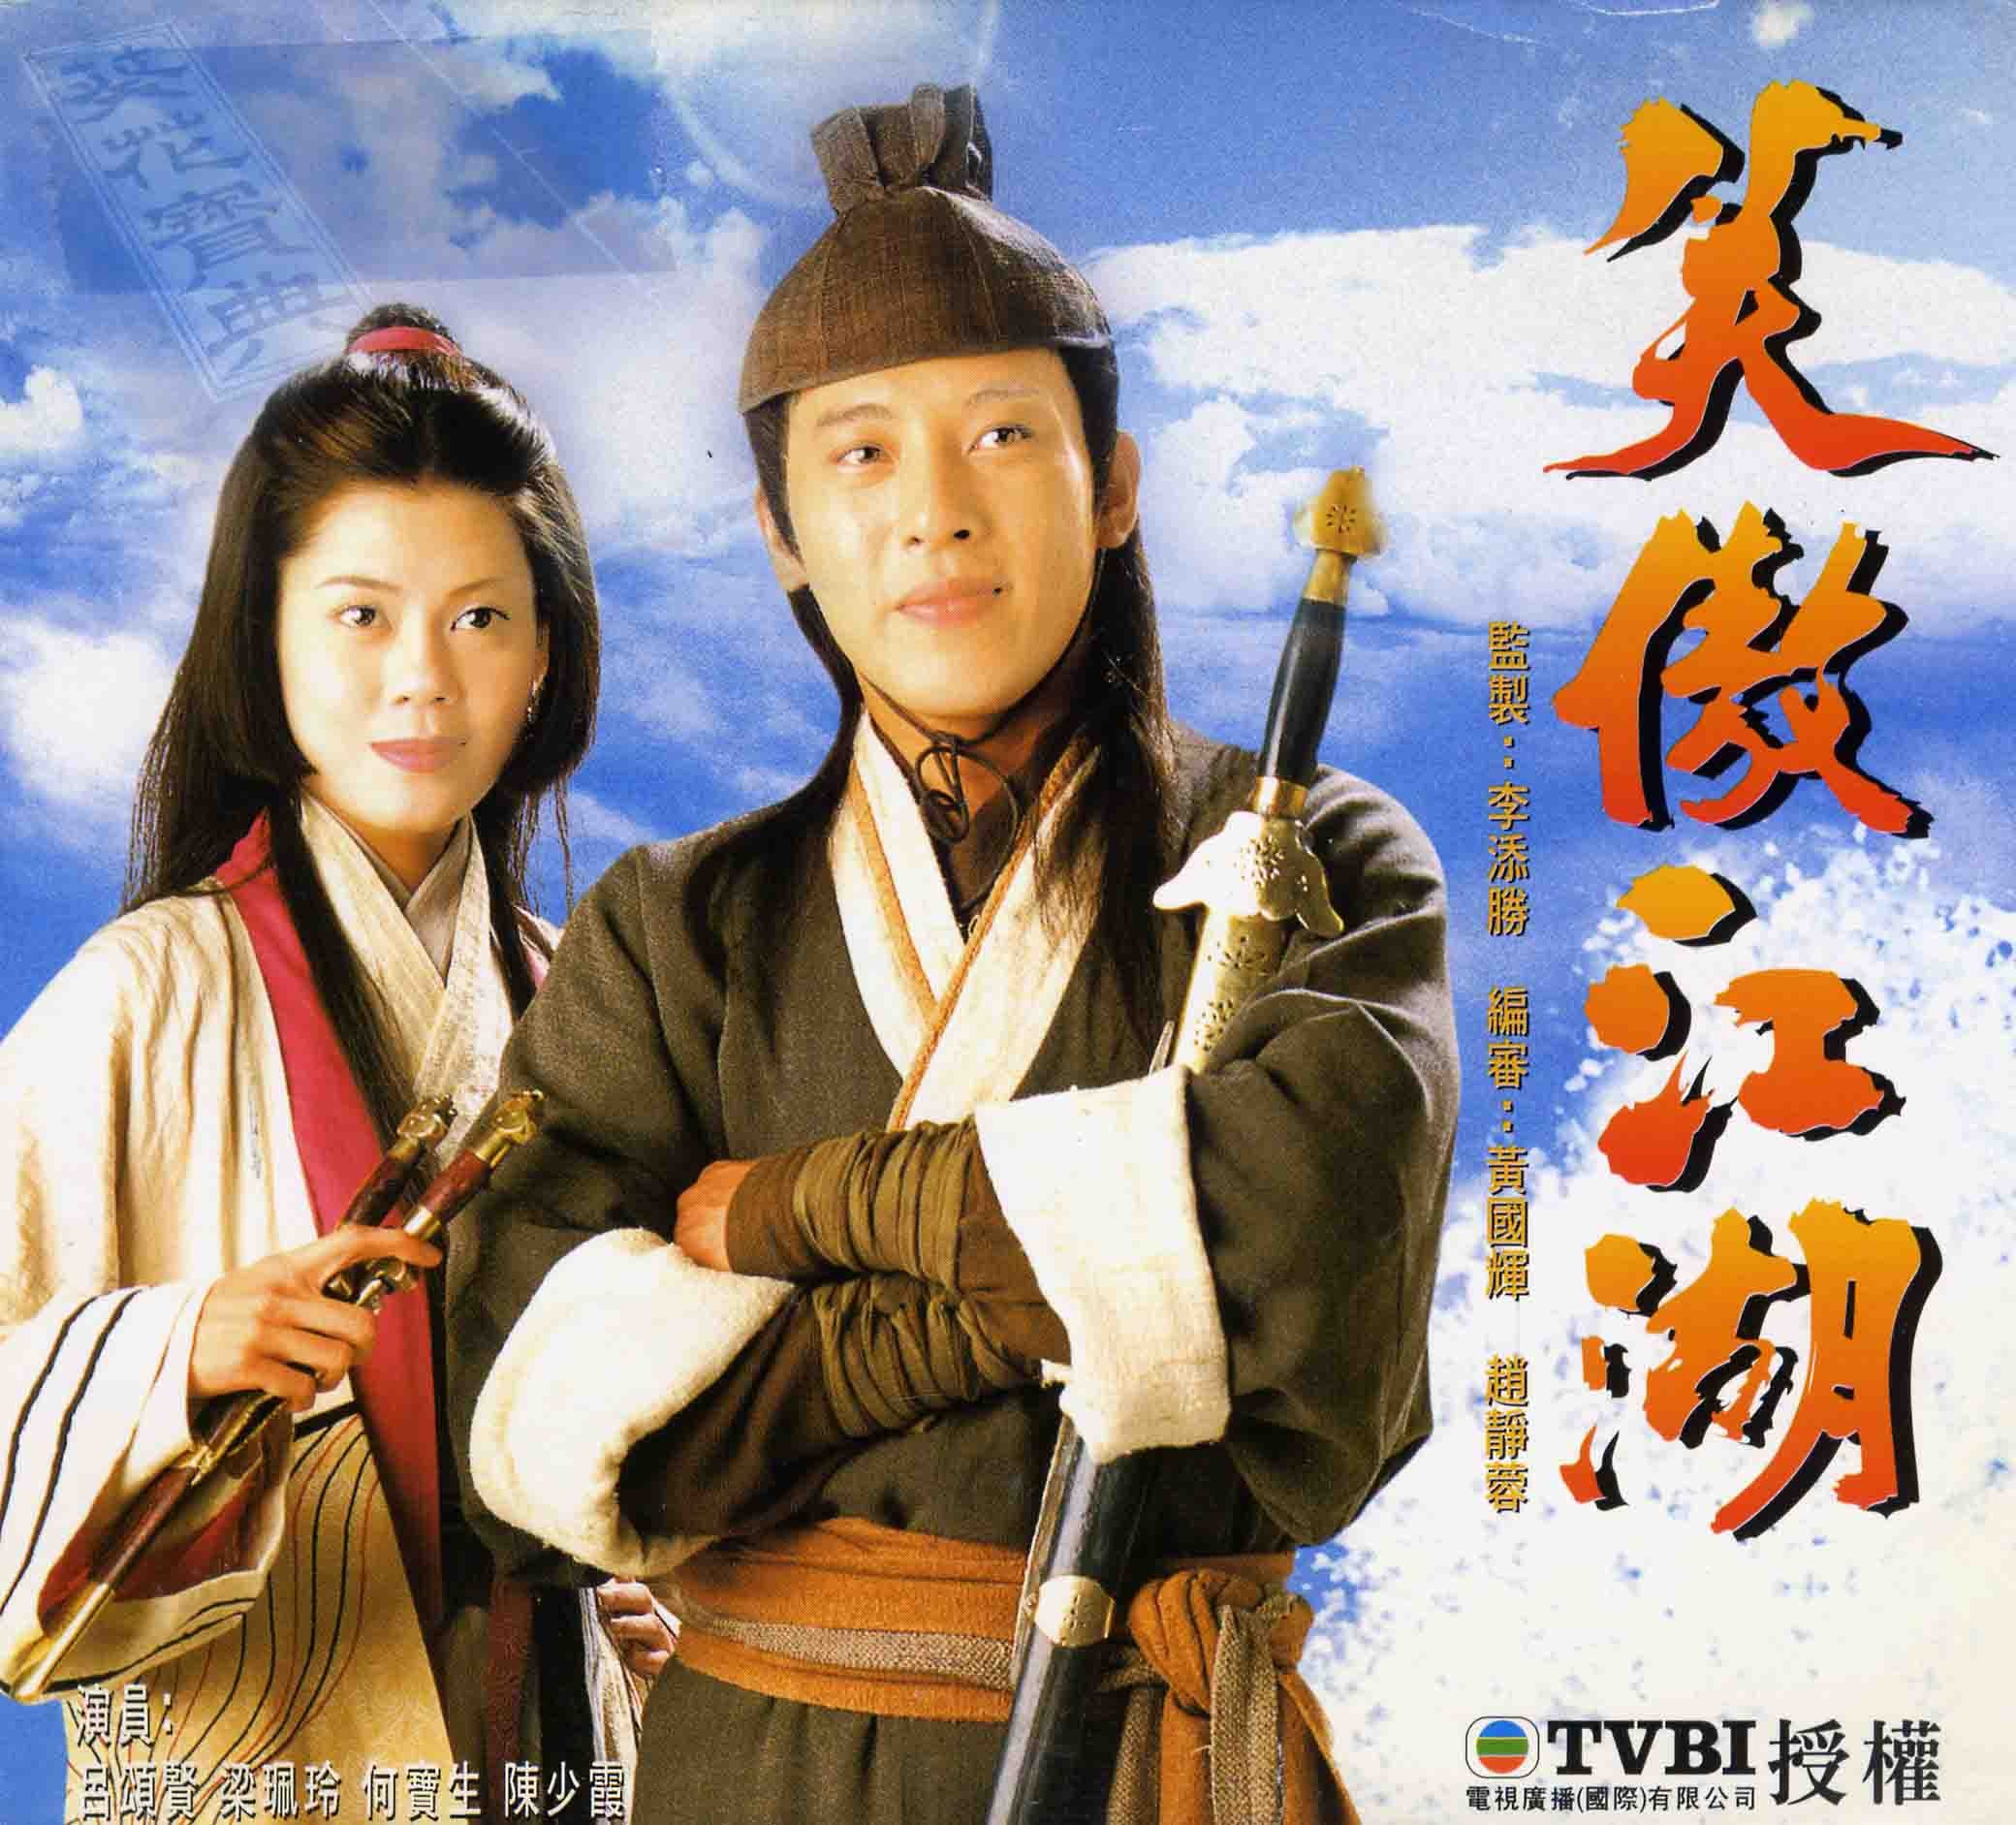 香港TVB經典電視劇96版《笑傲江湖》